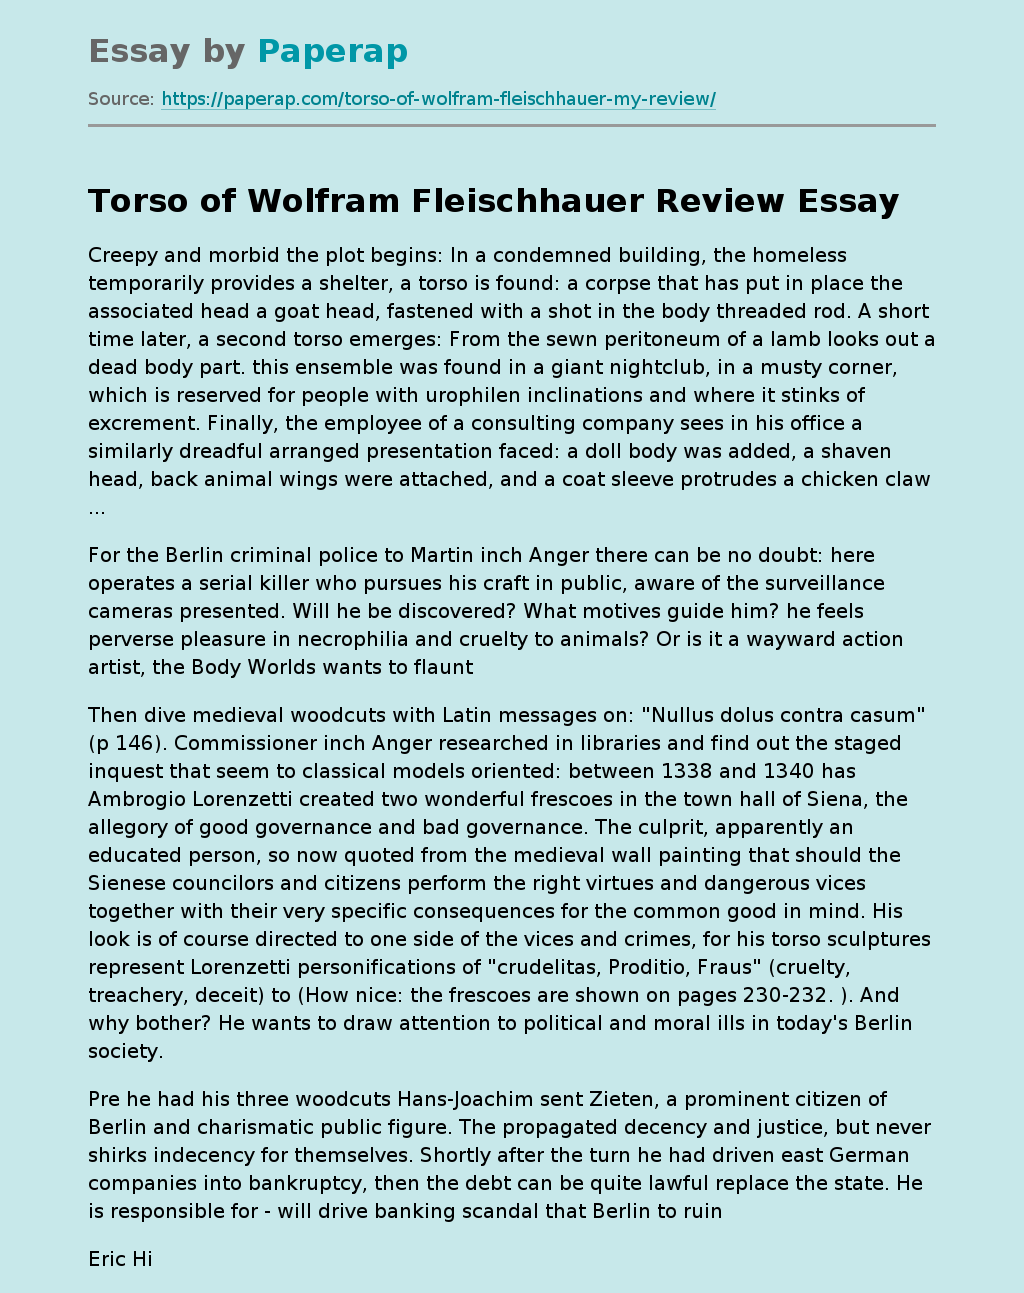 Book "Torso" of Wolfram Fleischhauer